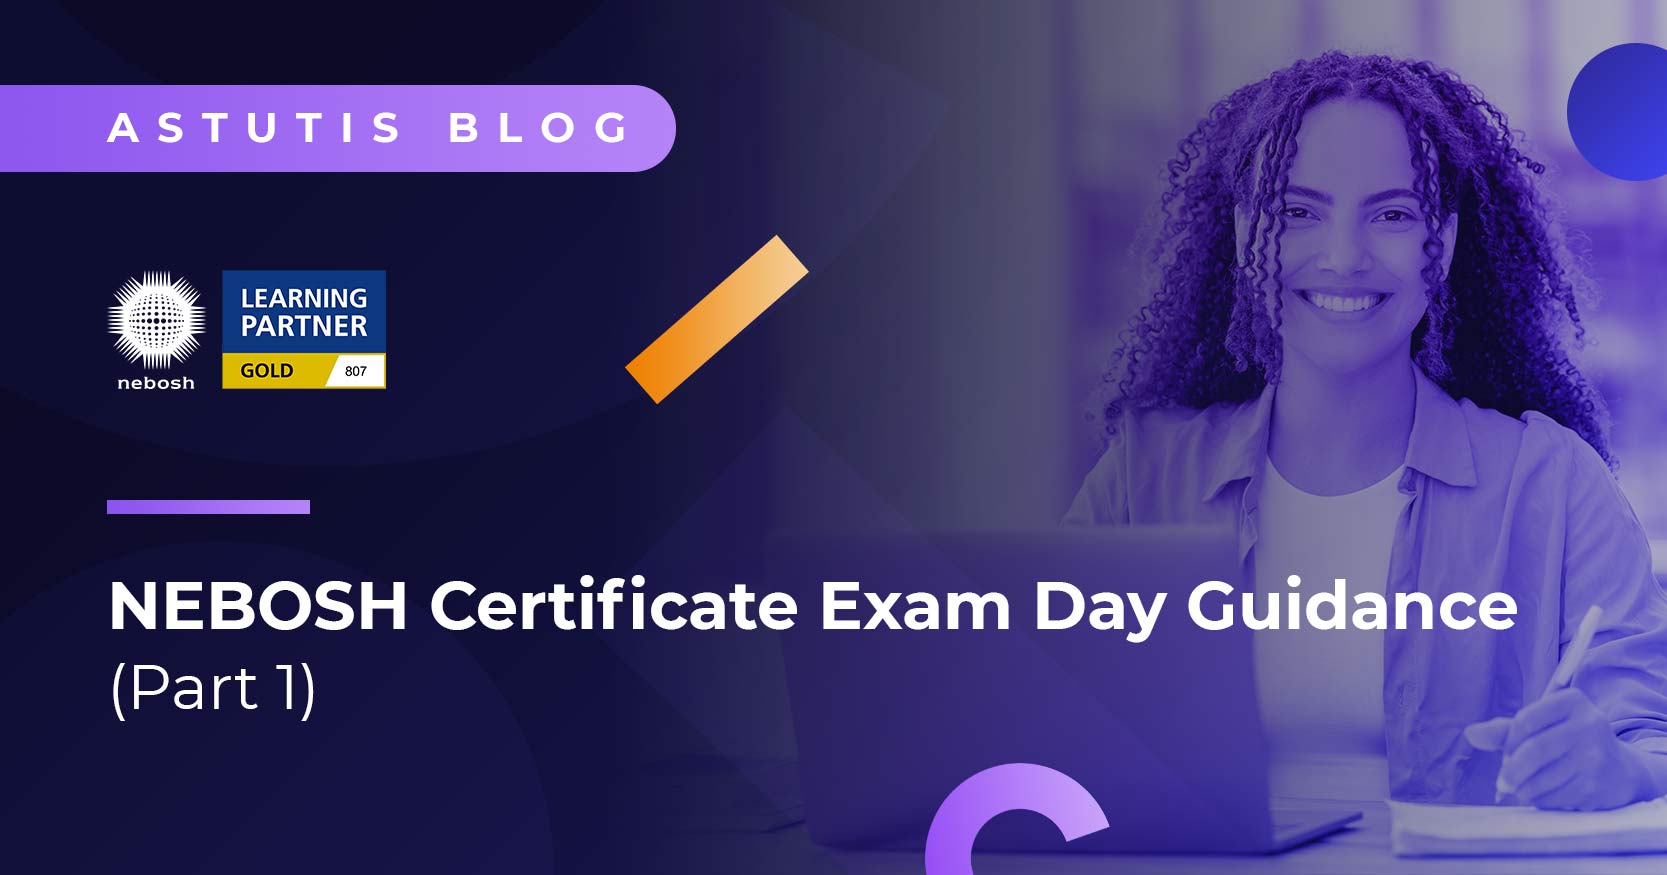 NEBOSH Certificate Exam Day Guidance Part 1 Image